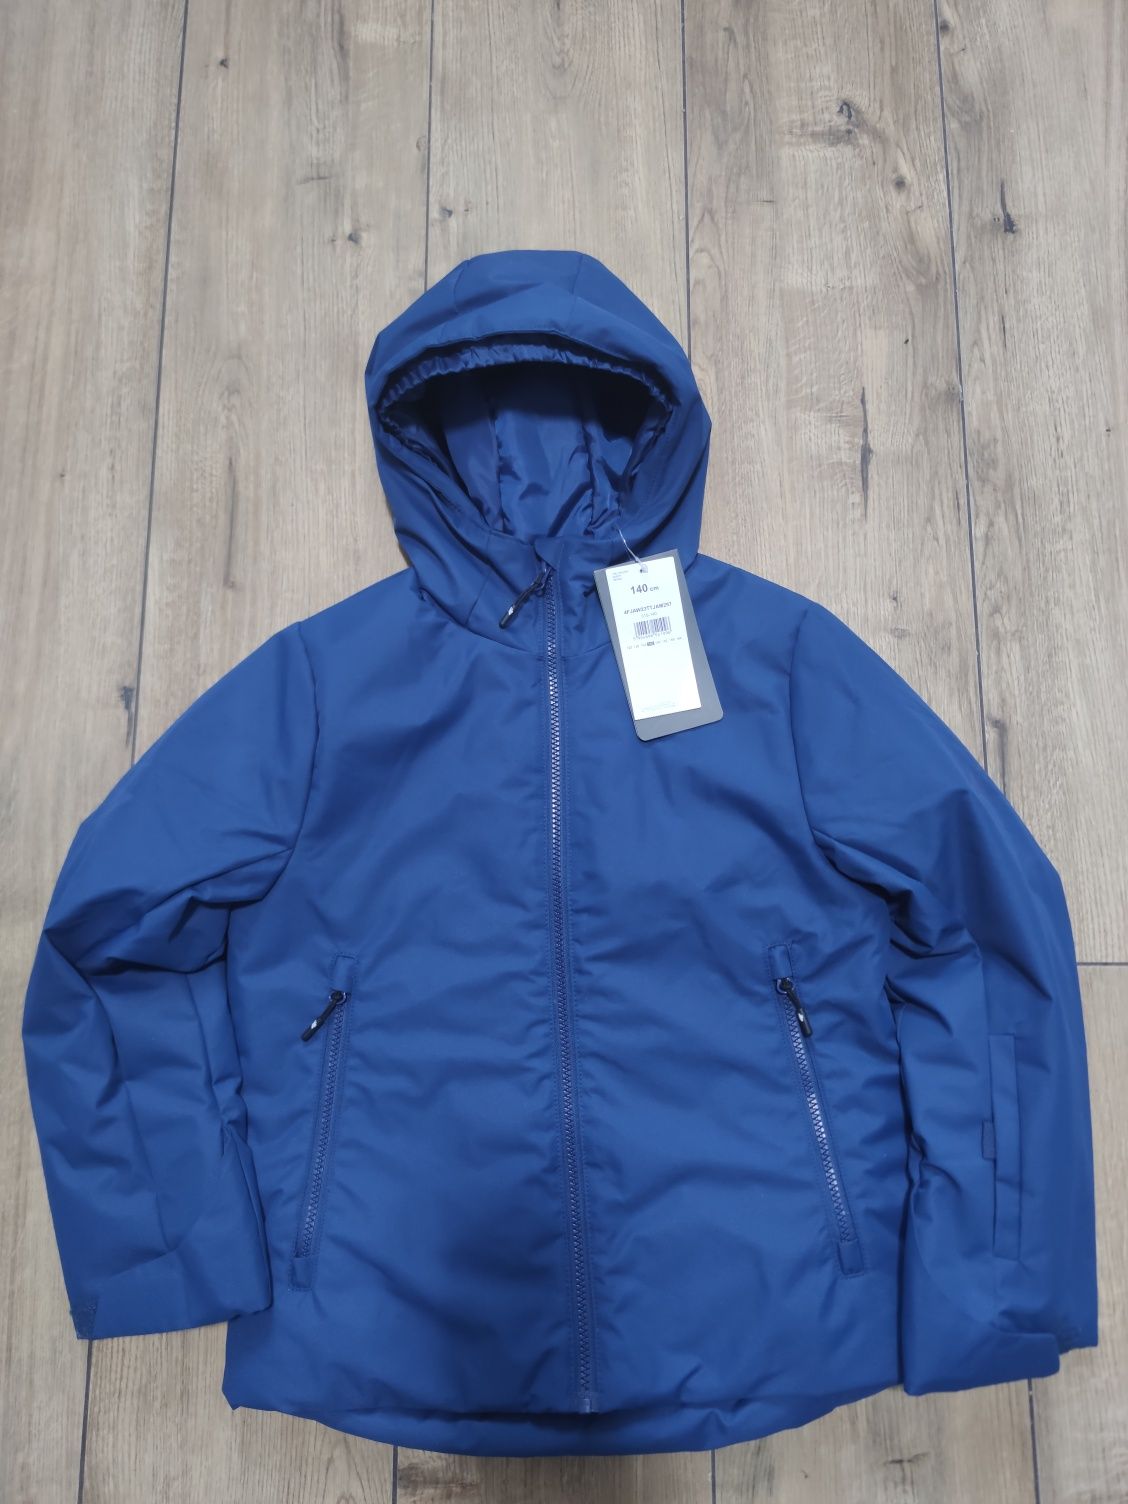 Zestaw narciarski chłopięcy kurtka spodnie niebieskie 4F rozmiar 140